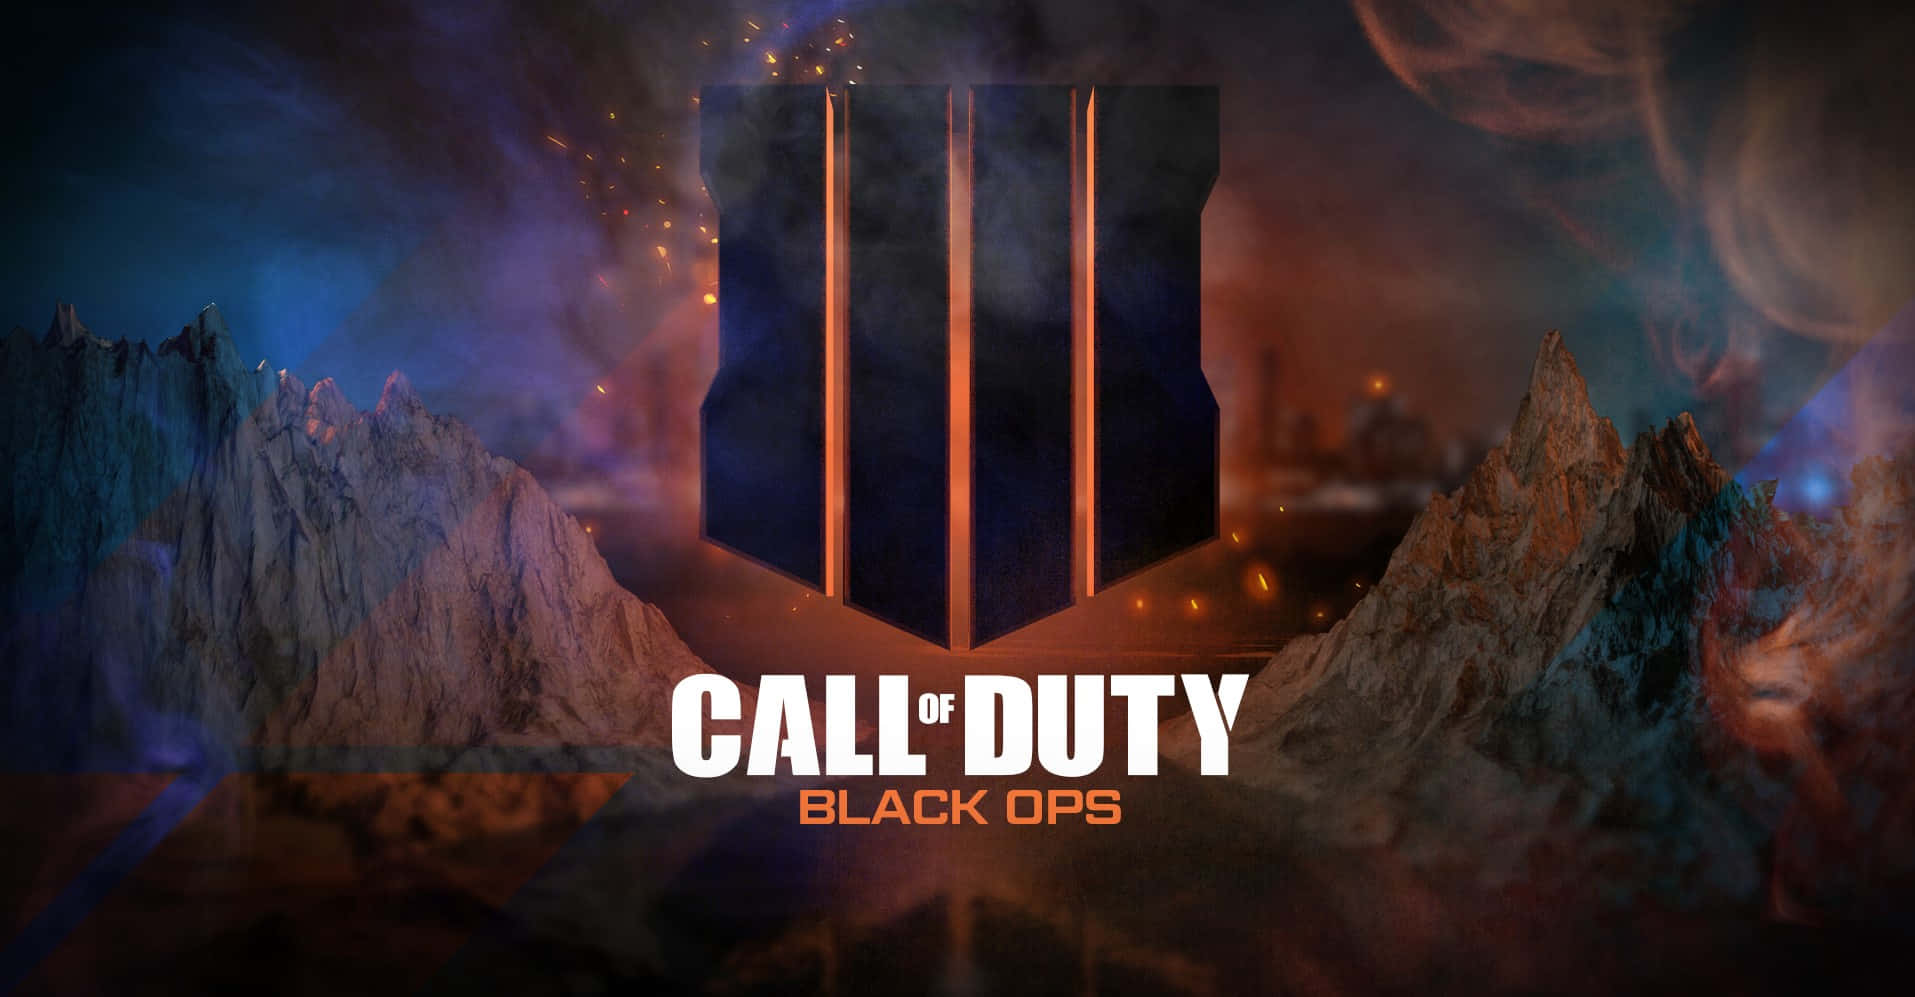 Hintergrundvon Call Of Duty: Black Ops 4.